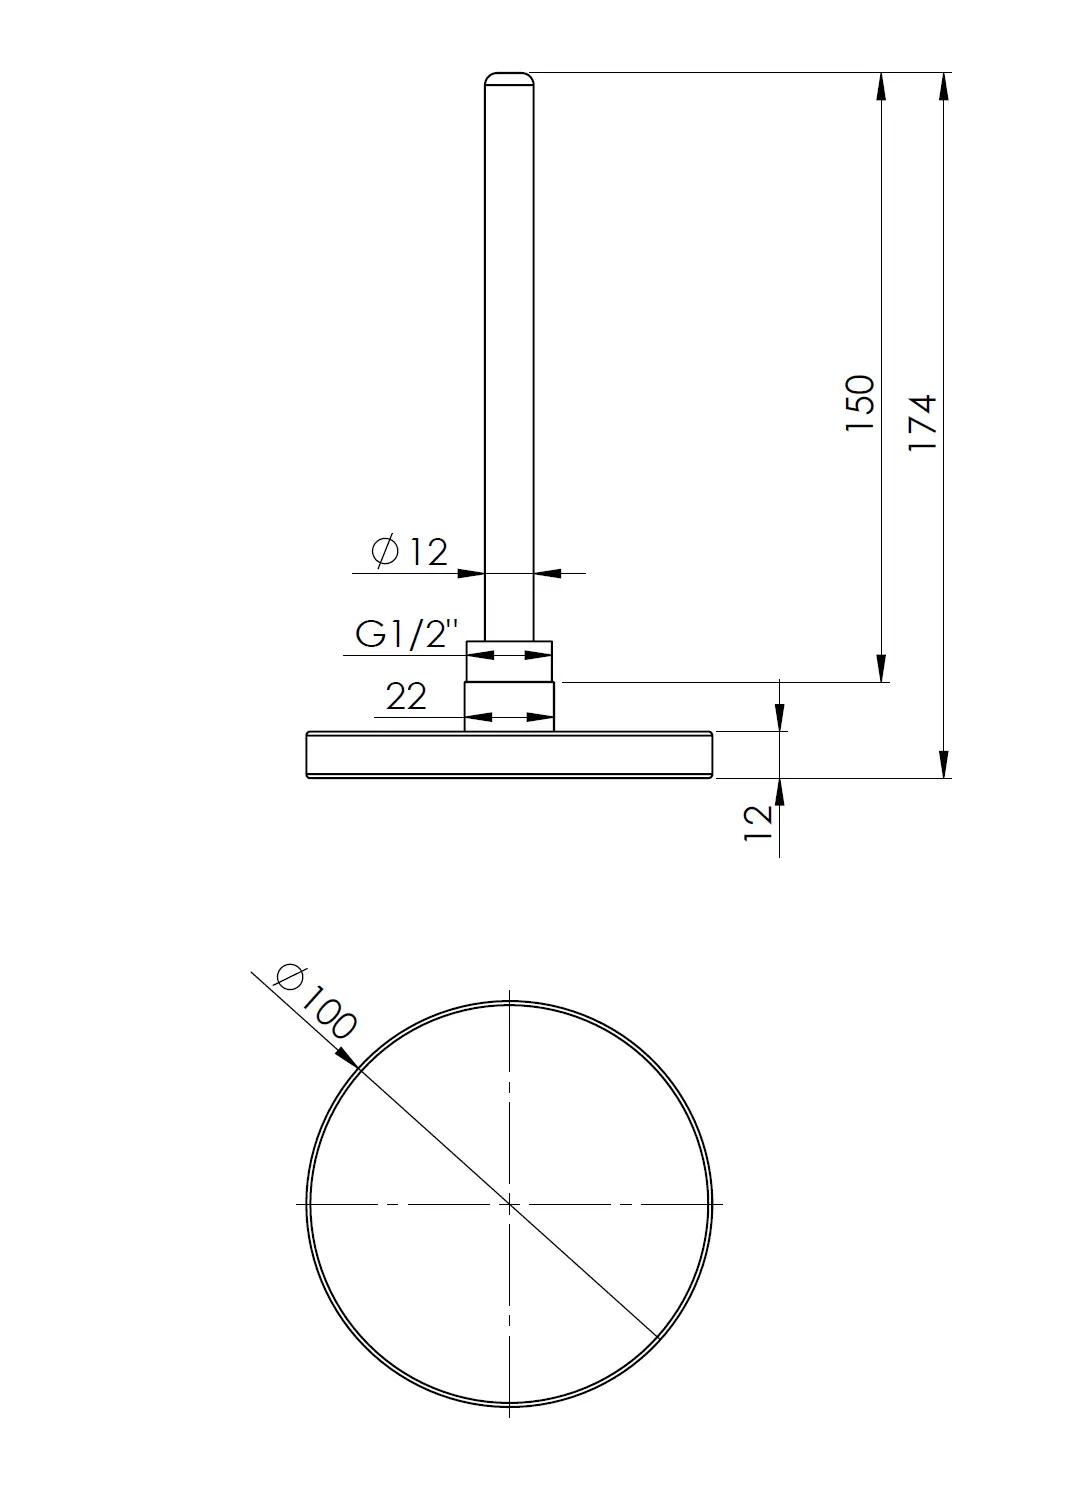 Termometr bimetaliczny BiTh 100, fi100 mm, -20÷60°C, L 150 mm, G1/2", ax, kl. 2 - budowa